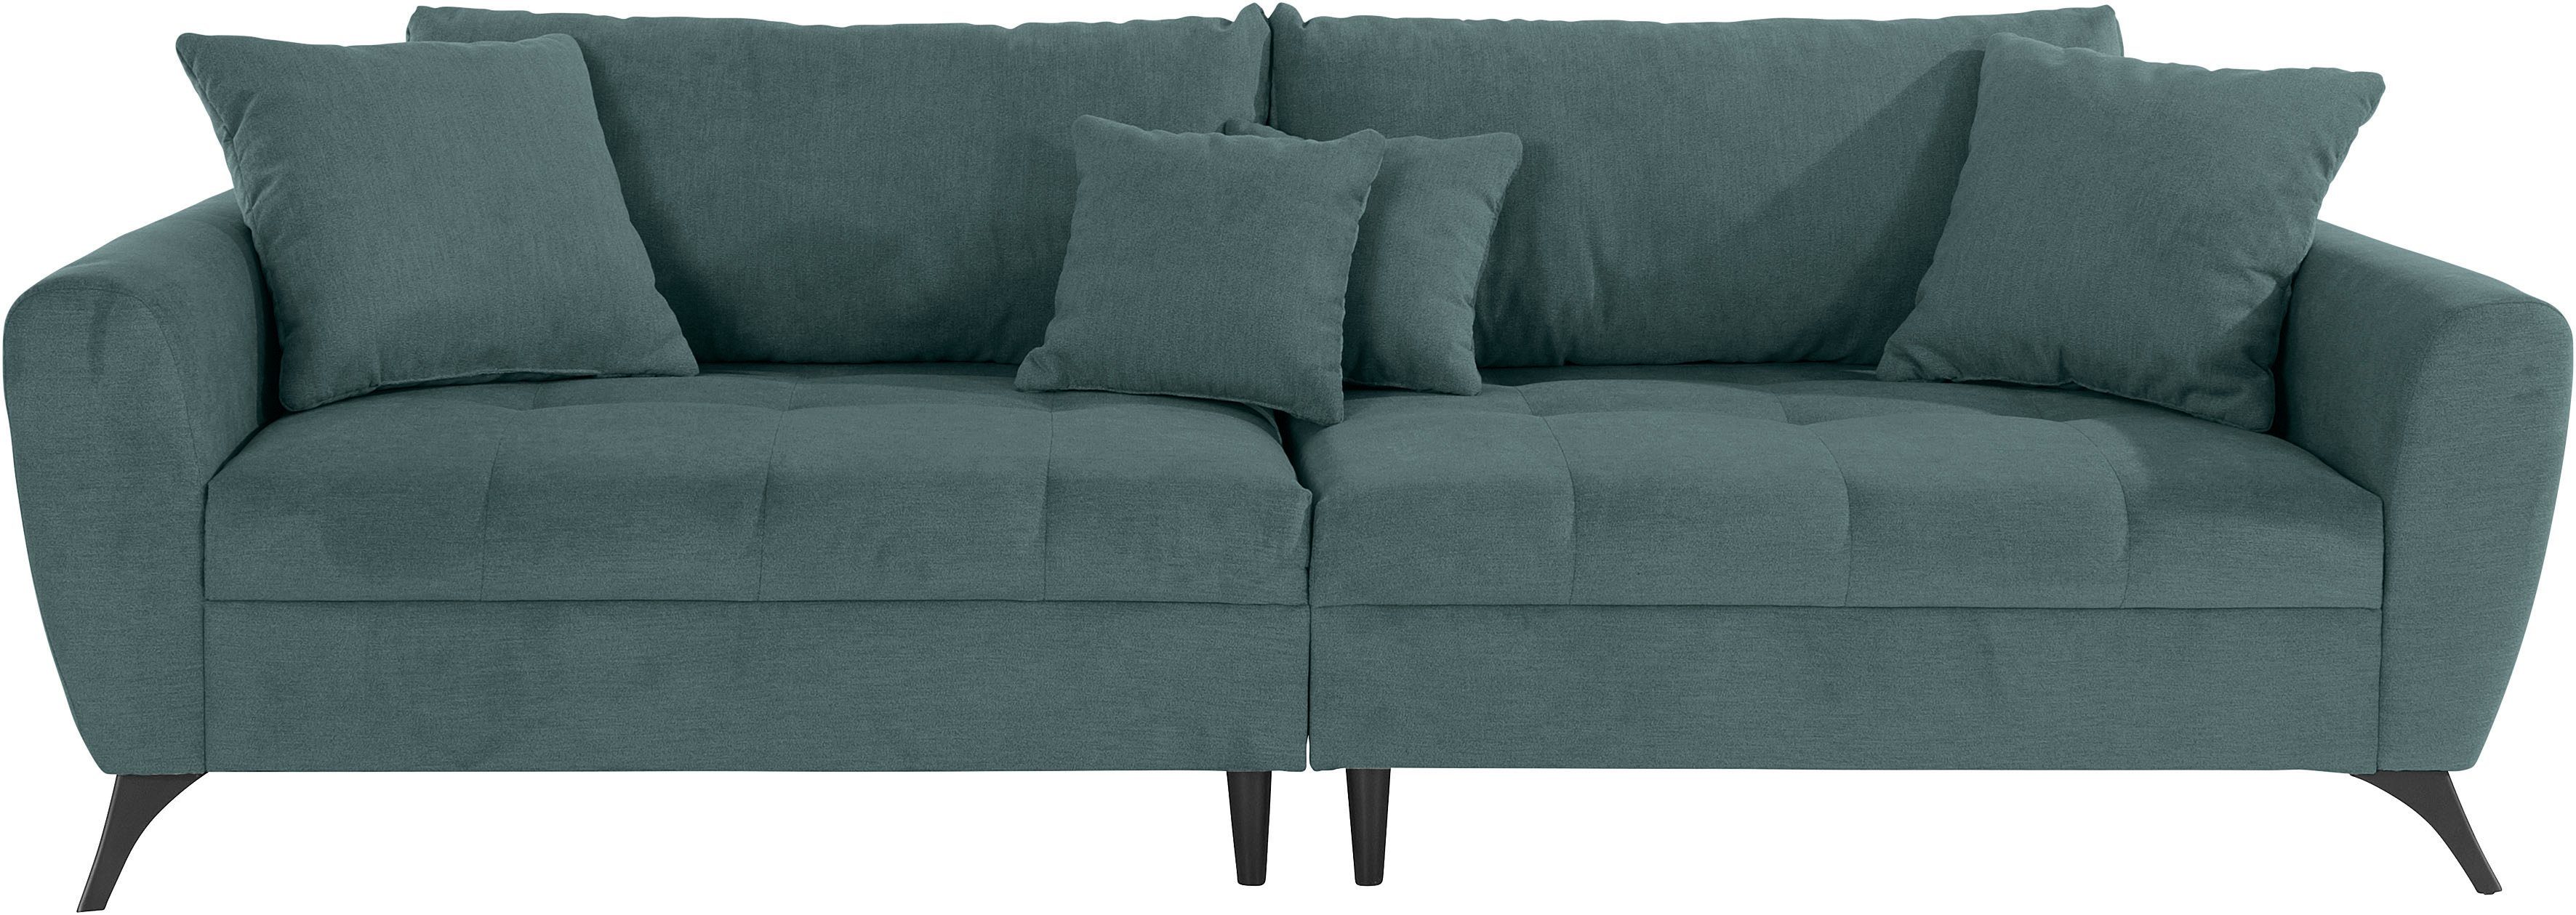 Belastbarkeit Big-Sofa auch pro clean-Bezug bis Lörby, INOSIGN Aqua 140kg mit Sitzplatz,